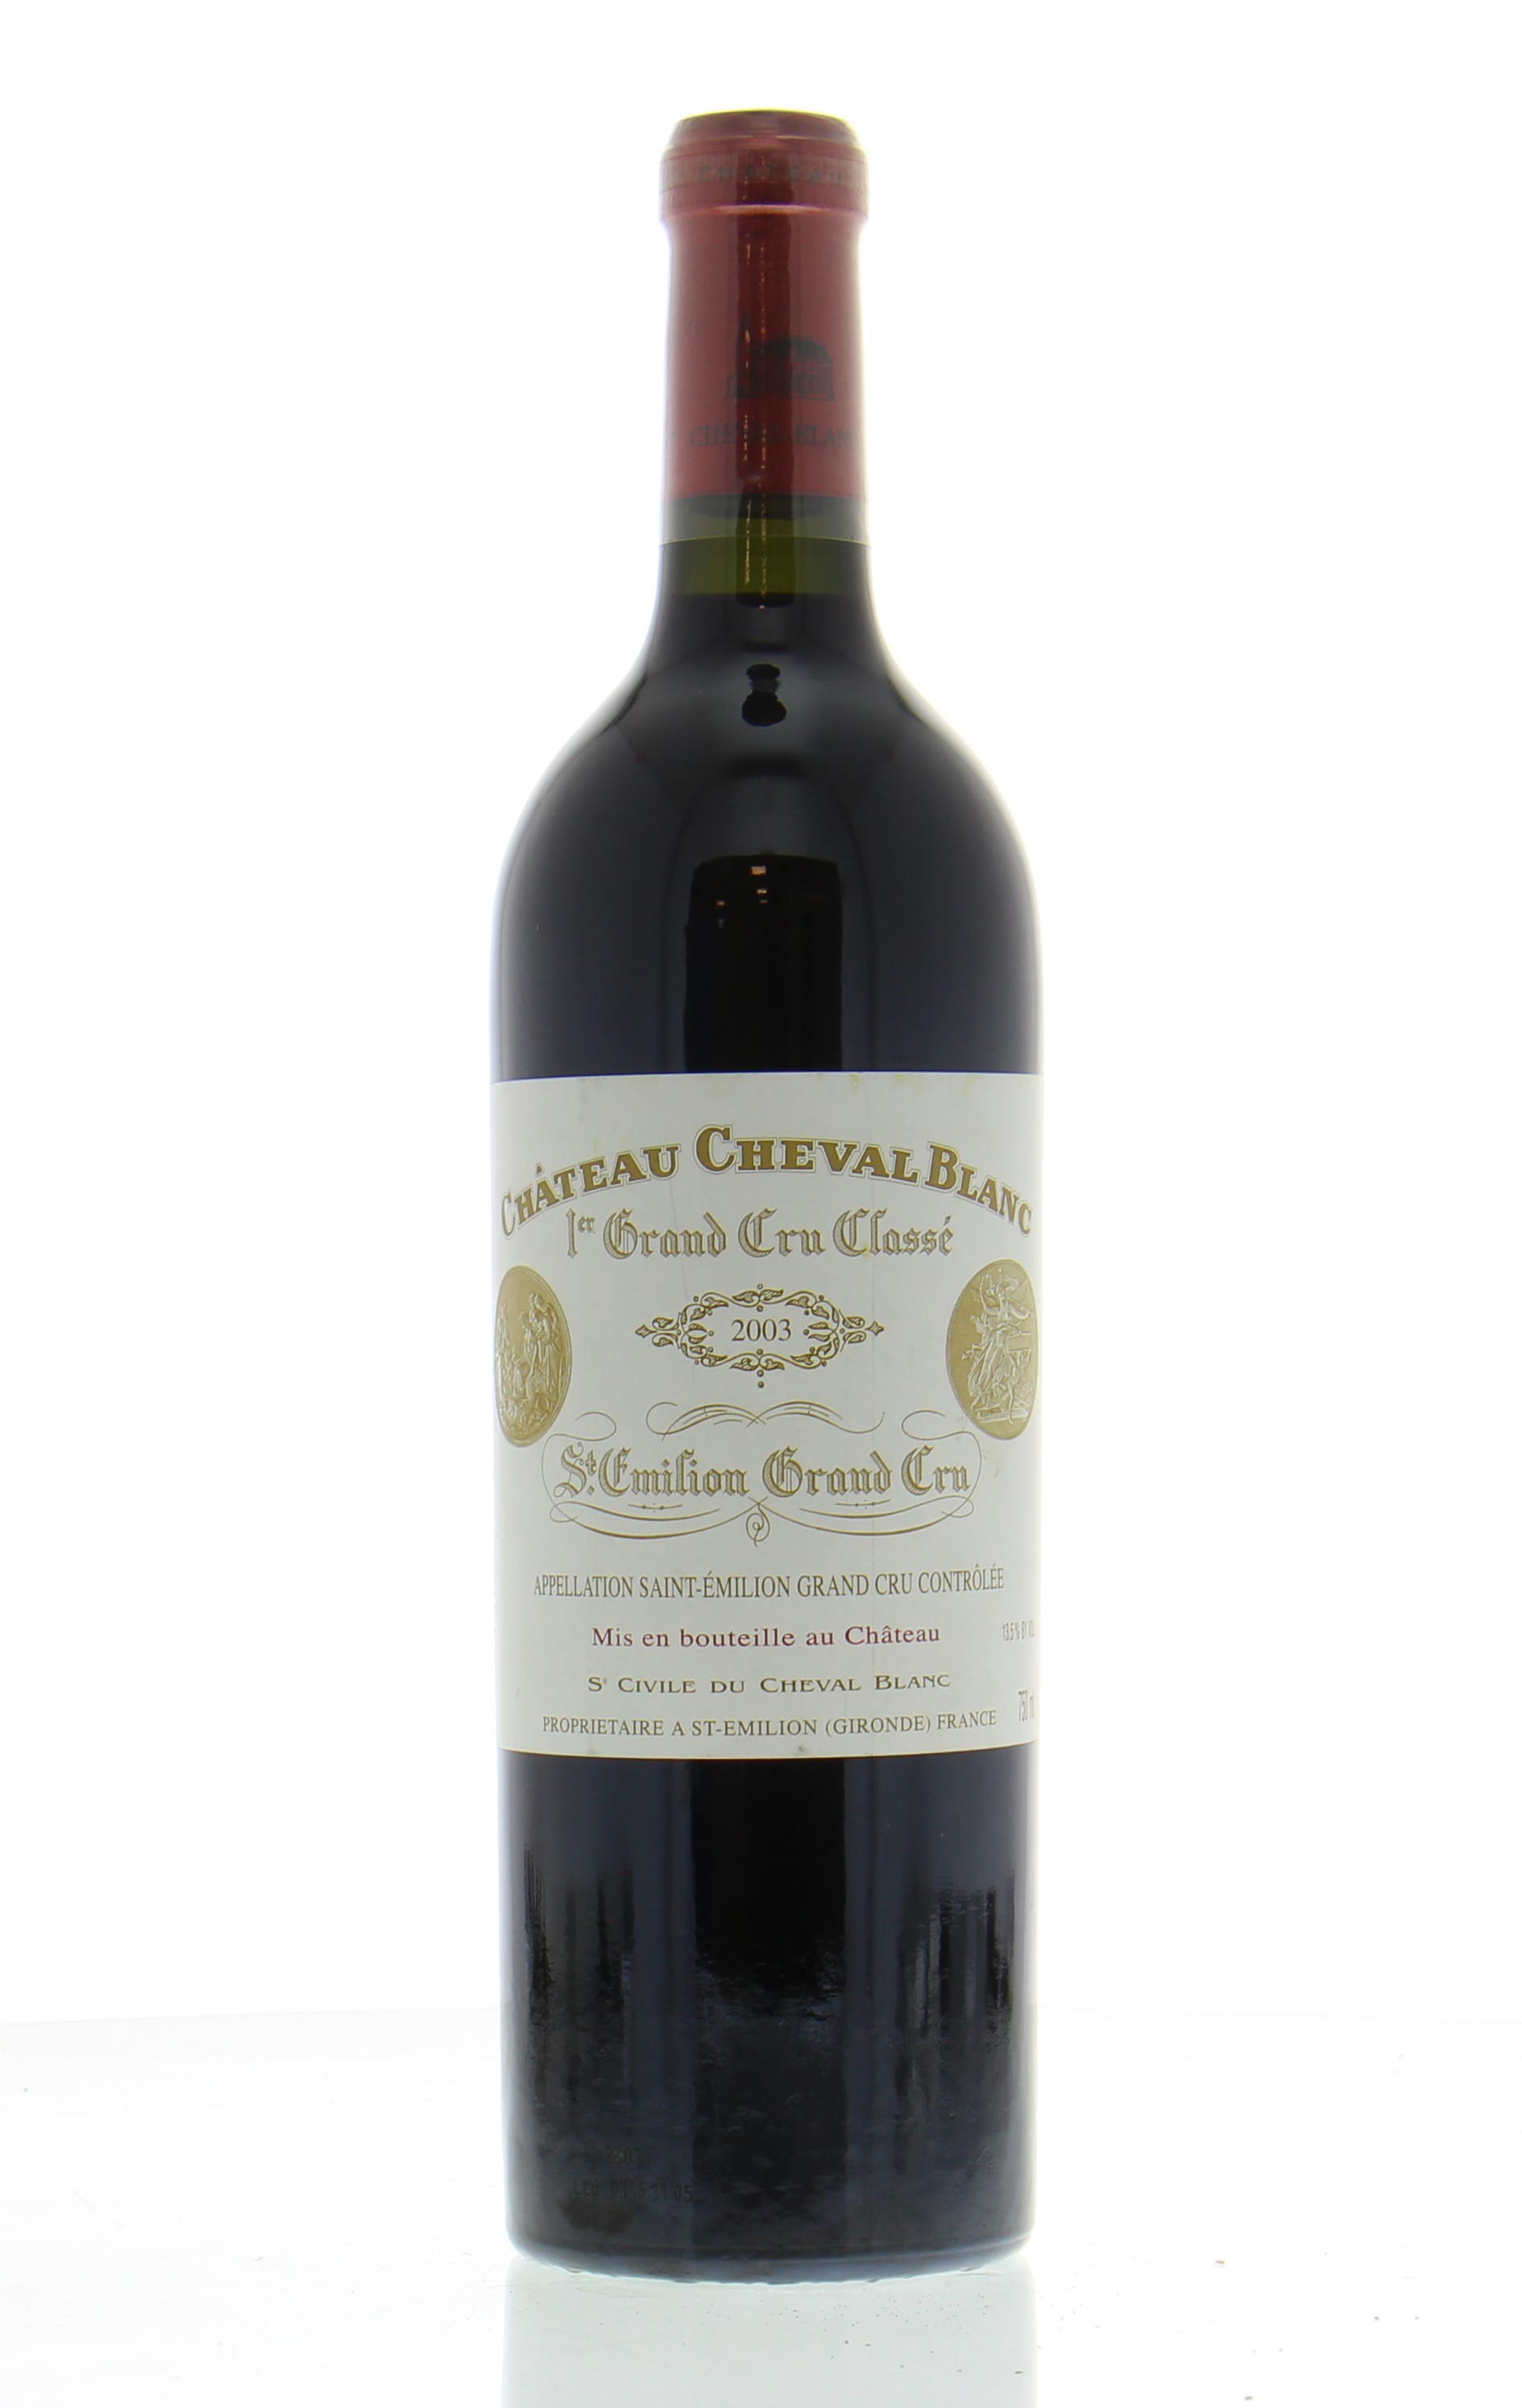 Chateau Cheval Blanc - Chateau Cheval Blanc 2003